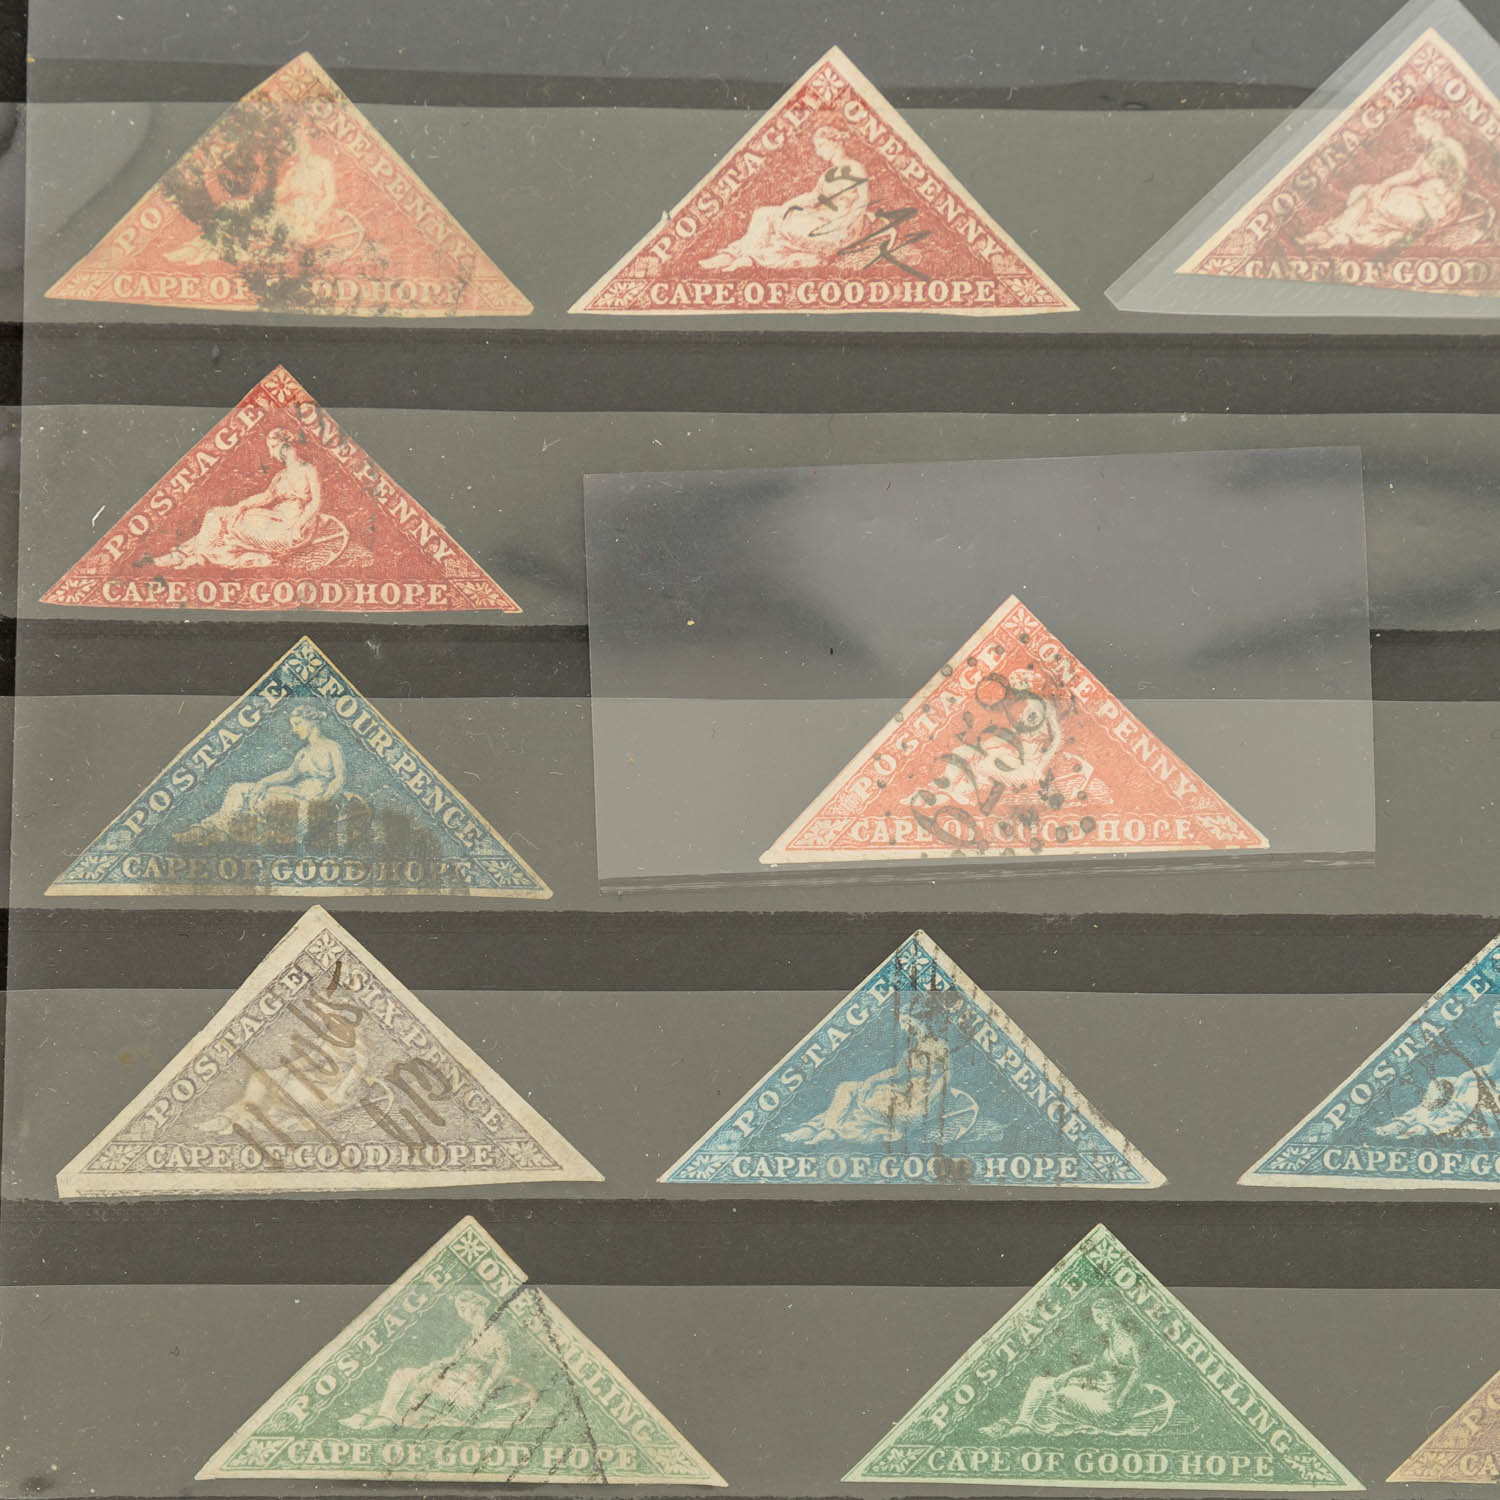 Briefmarken Kap der Guten Hoffnung 1853Kapdreiecke: Steckkarte mit insgesamt 16 gestem - Image 2 of 3